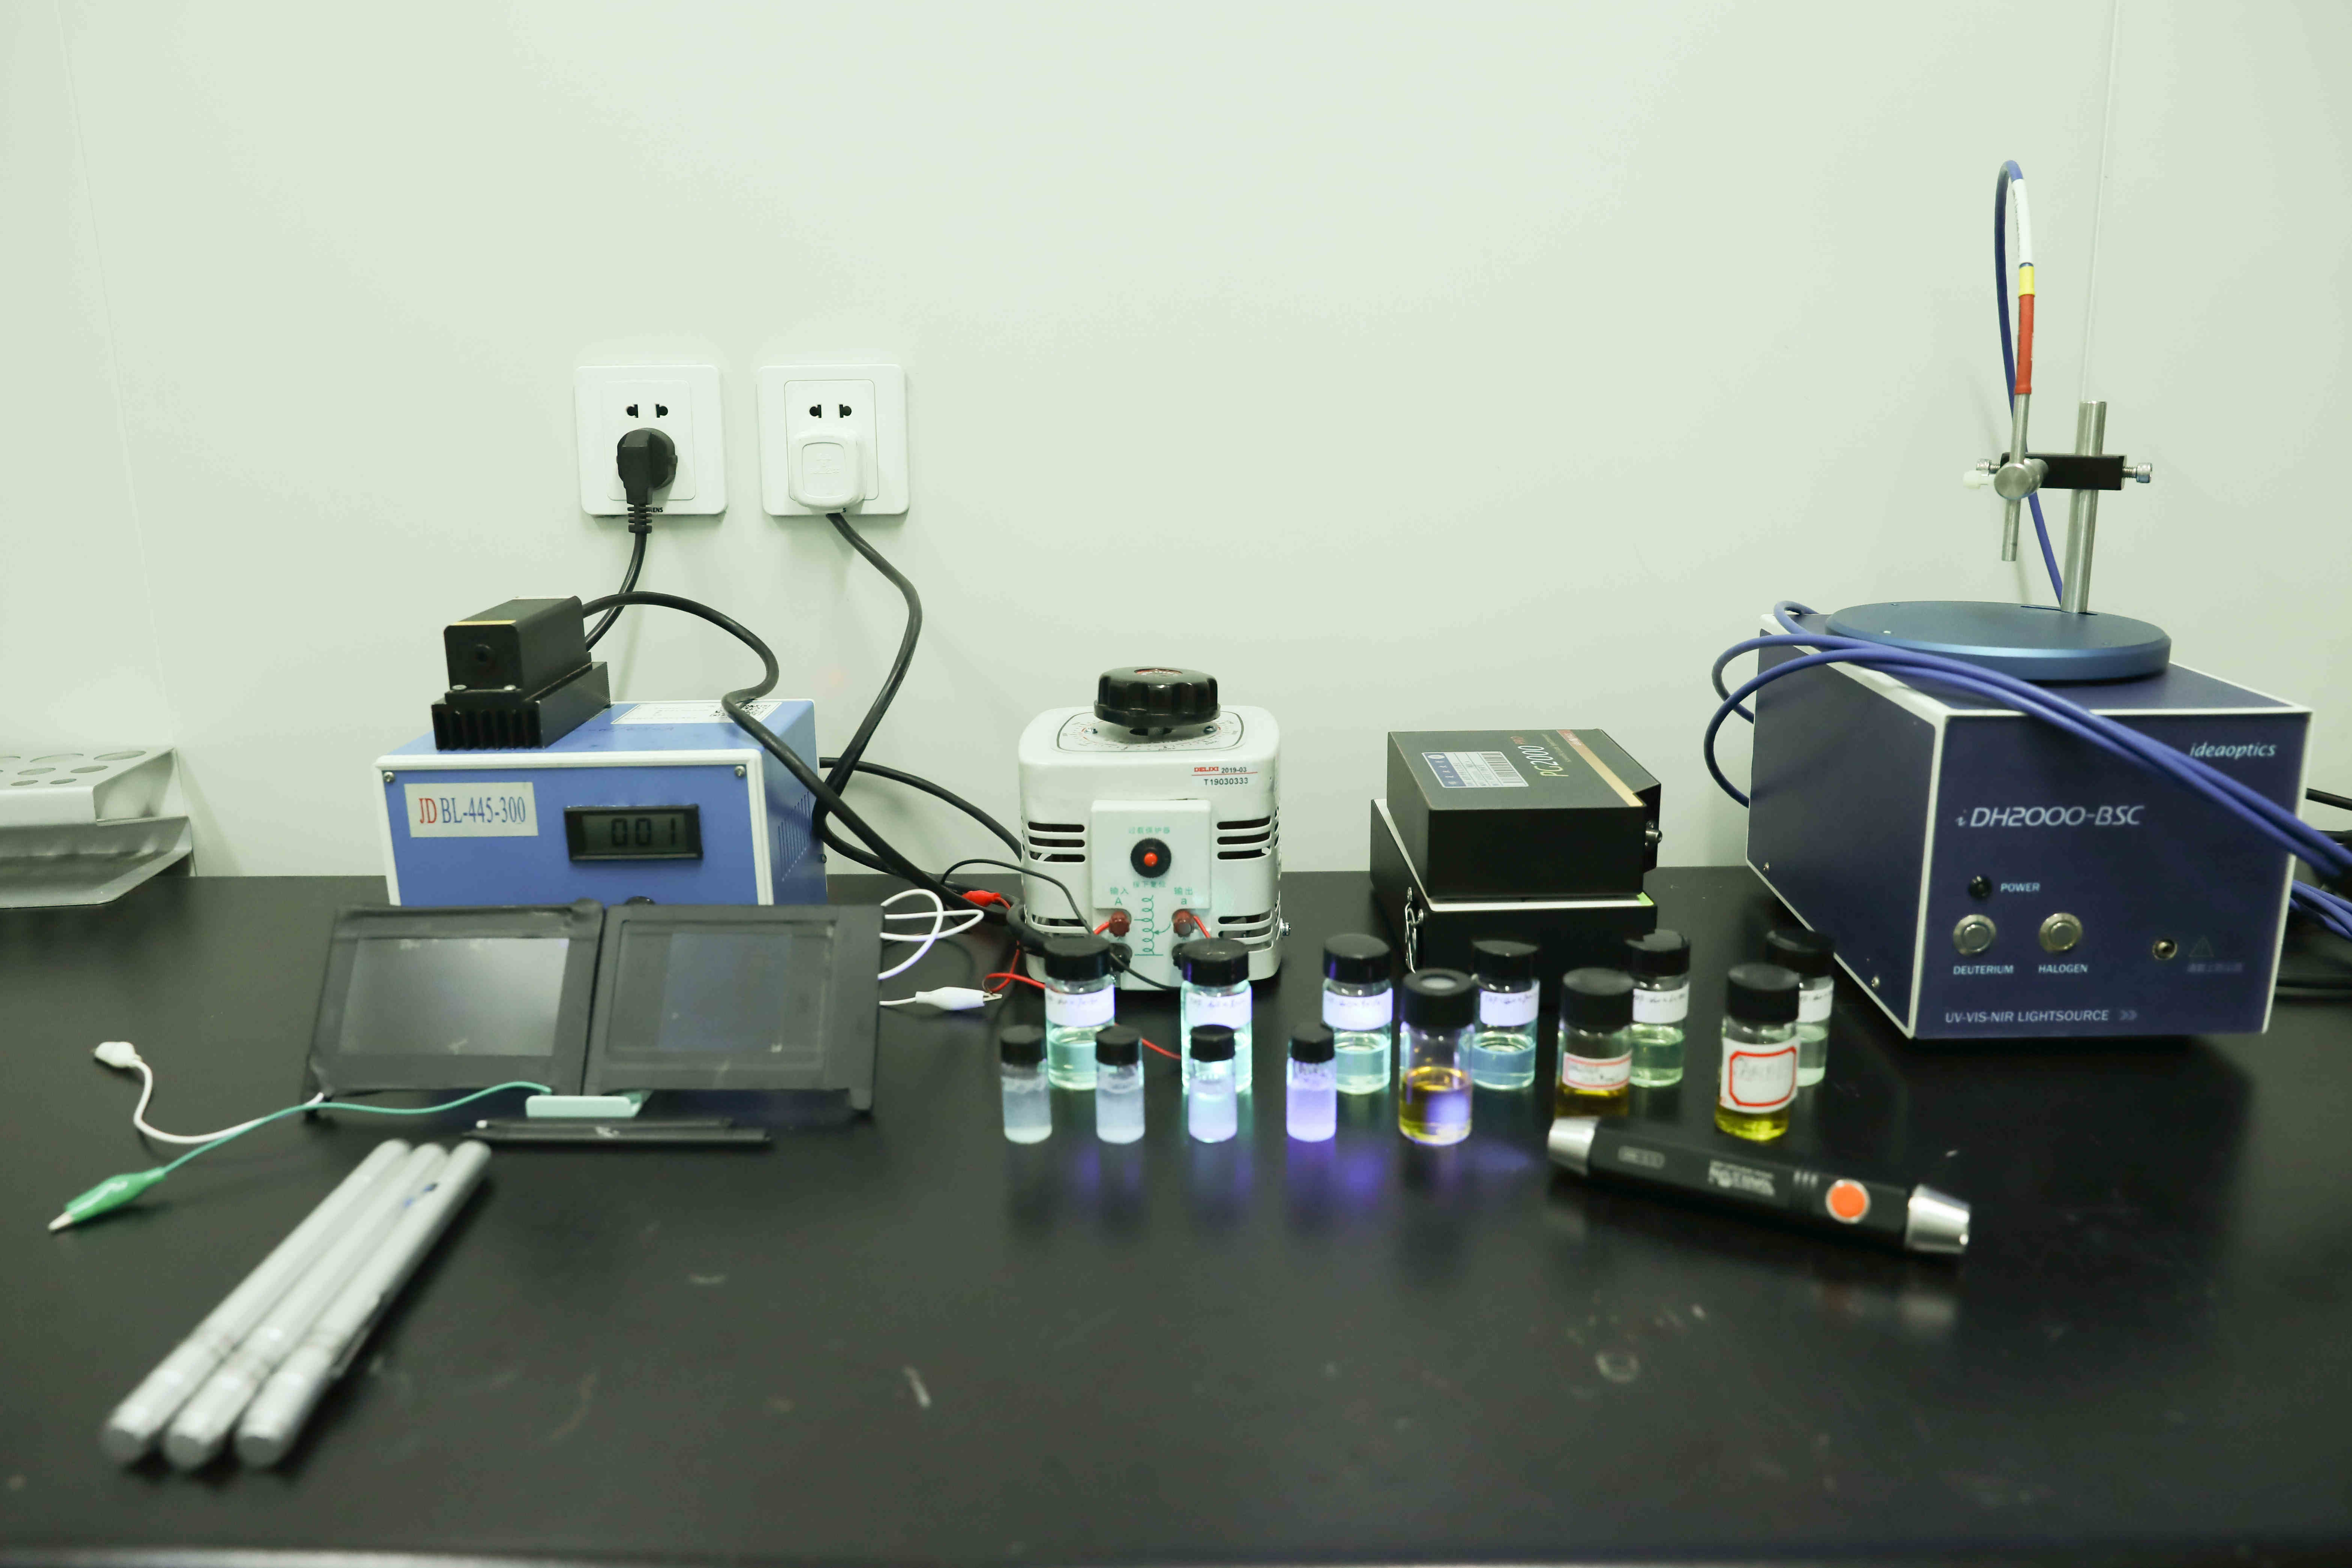 各波长激光器、光谱仪、变压器、光响应“光子墨水”及液晶手写板原型器件 摄影：杨泽璇.jpg